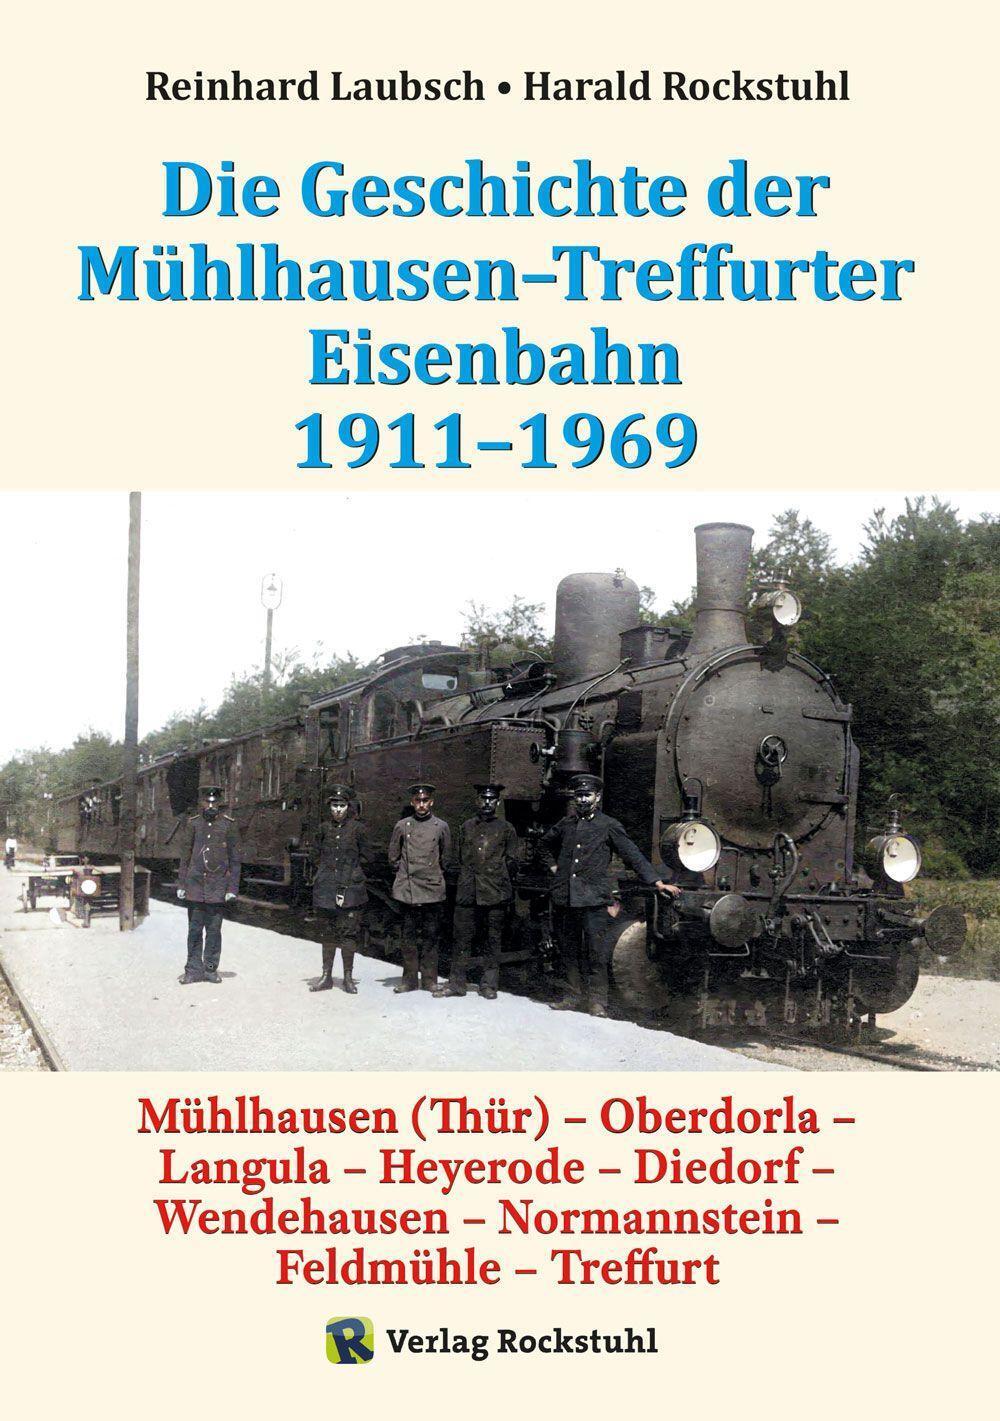 Bild: 9783959666497 | Mühlhausen-Treffurter Eisenbahn 1911-1969 | Reinhard Laubsch (u. a.)